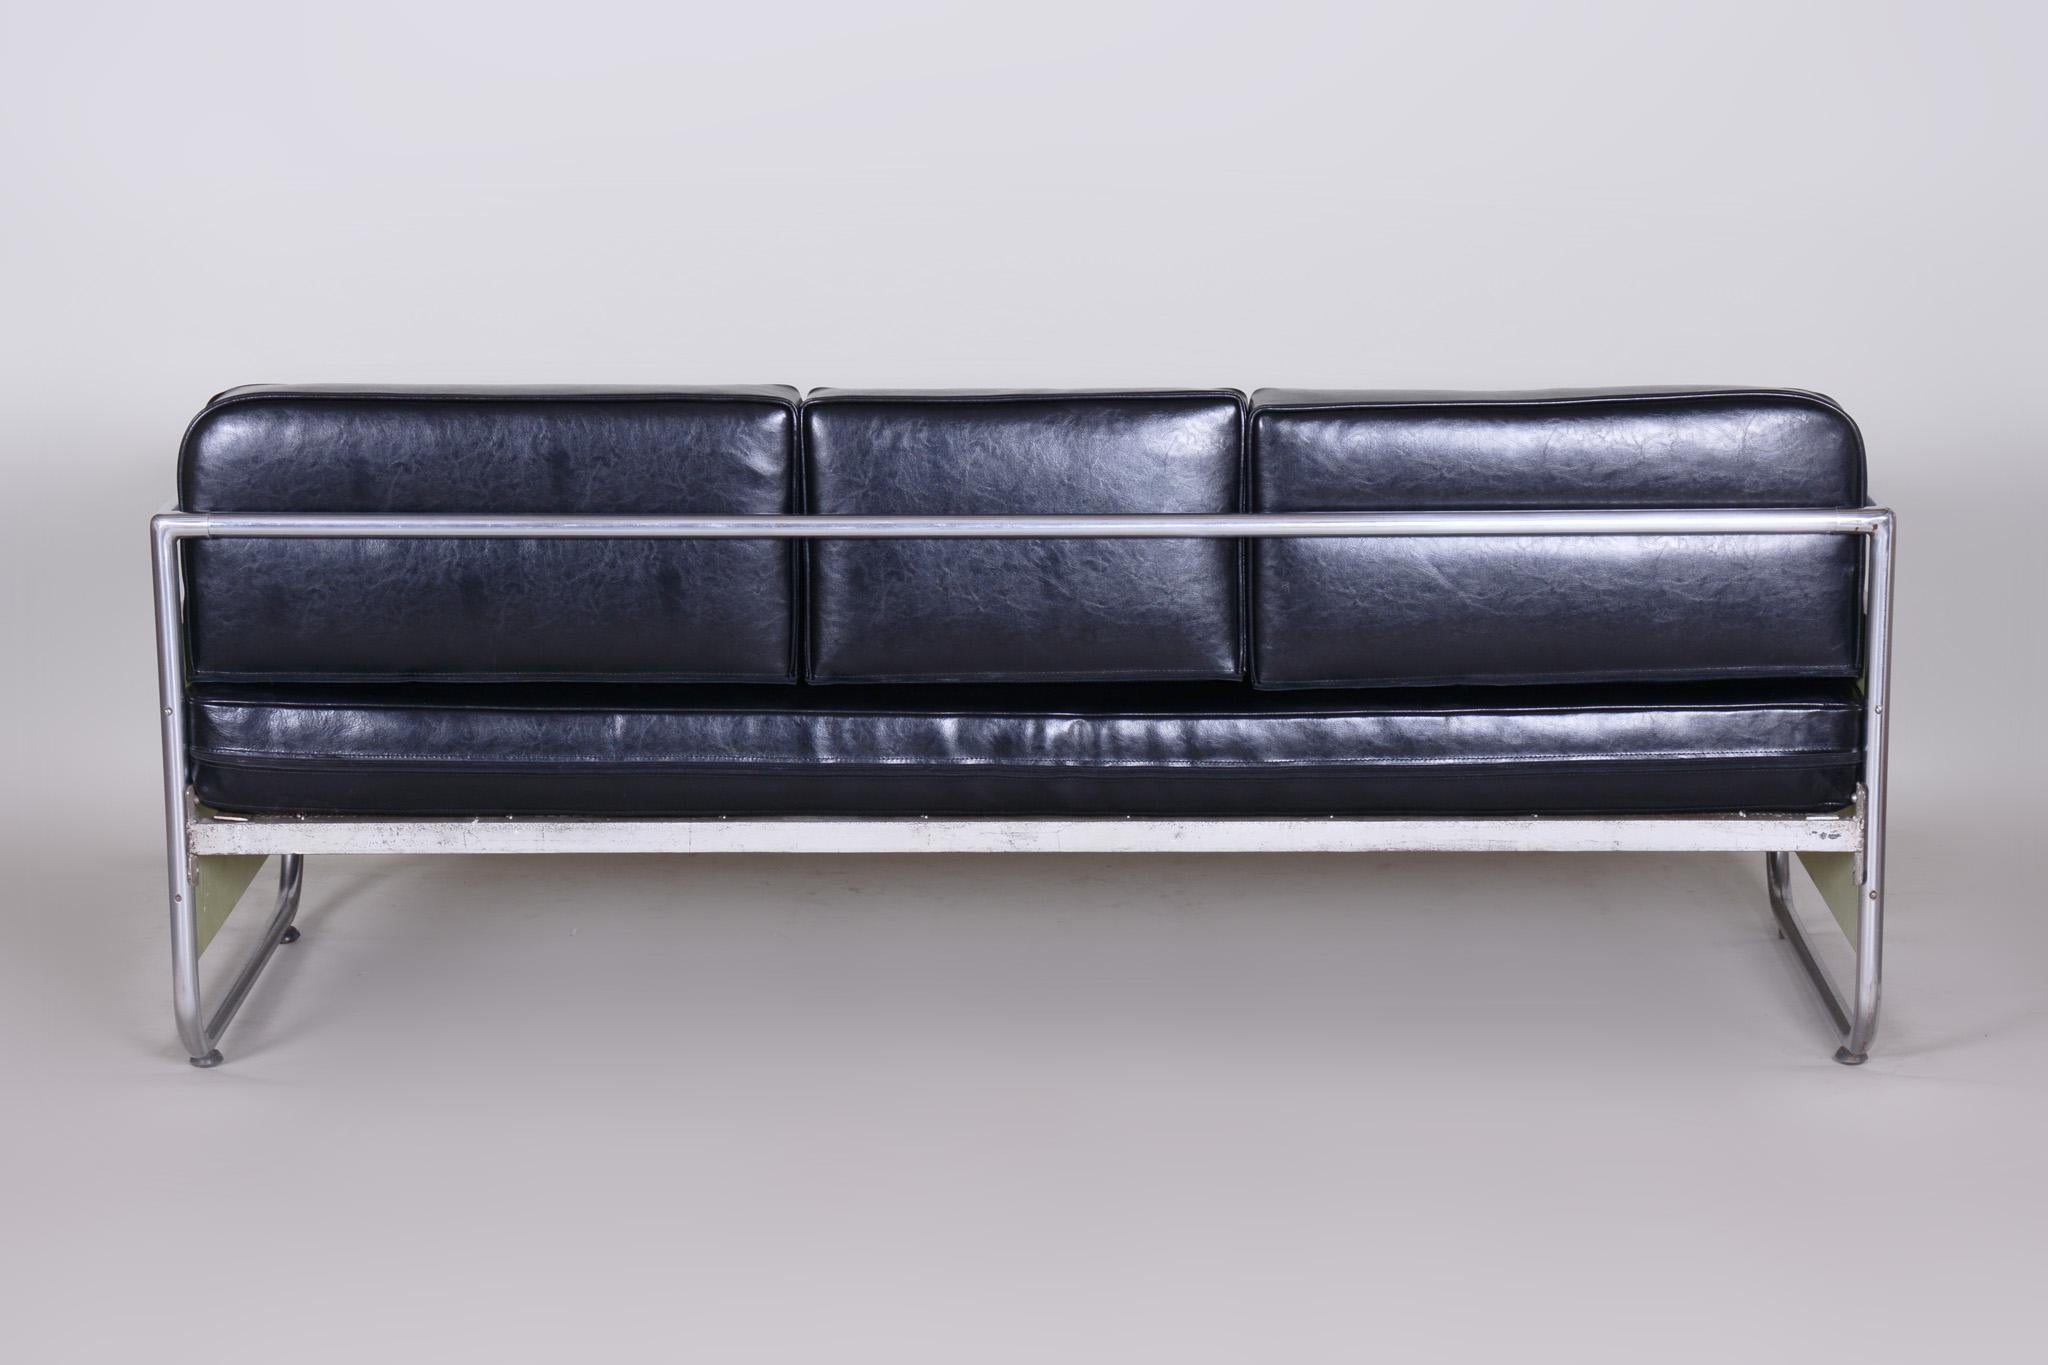 Canapé de style Bauhaus avec cadre en acier tubulaire chromé.
Fabriqué par Vichr a Spol dans les années 1930.
L'acier tubulaire chromé est en parfait état d'origine.
Rembourrage en cuir de haute qualité
Source : Tchécoslovaquie (Czechoslovakia).